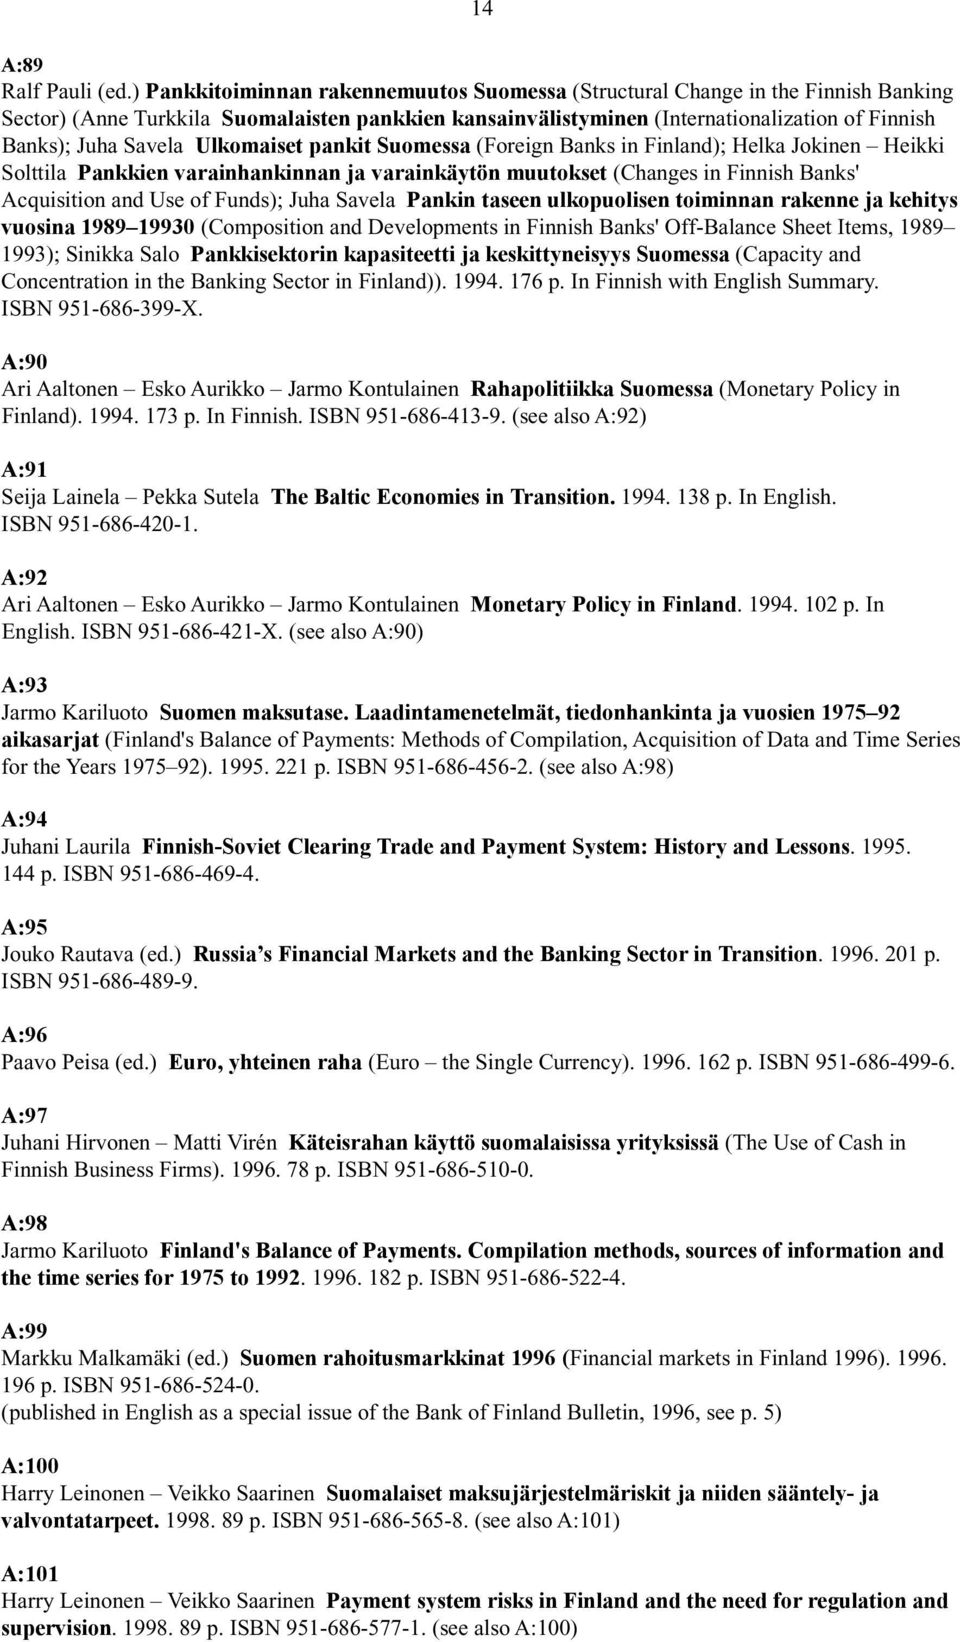 Savela Ulkomaiset pankit Suomessa (Foreign Banks in Finland); Helka Jokinen Heikki Solttila Pankkien varainhankinnan ja varainkäytön muutokset (Changes in Finnish Banks' Acquisition and Use of